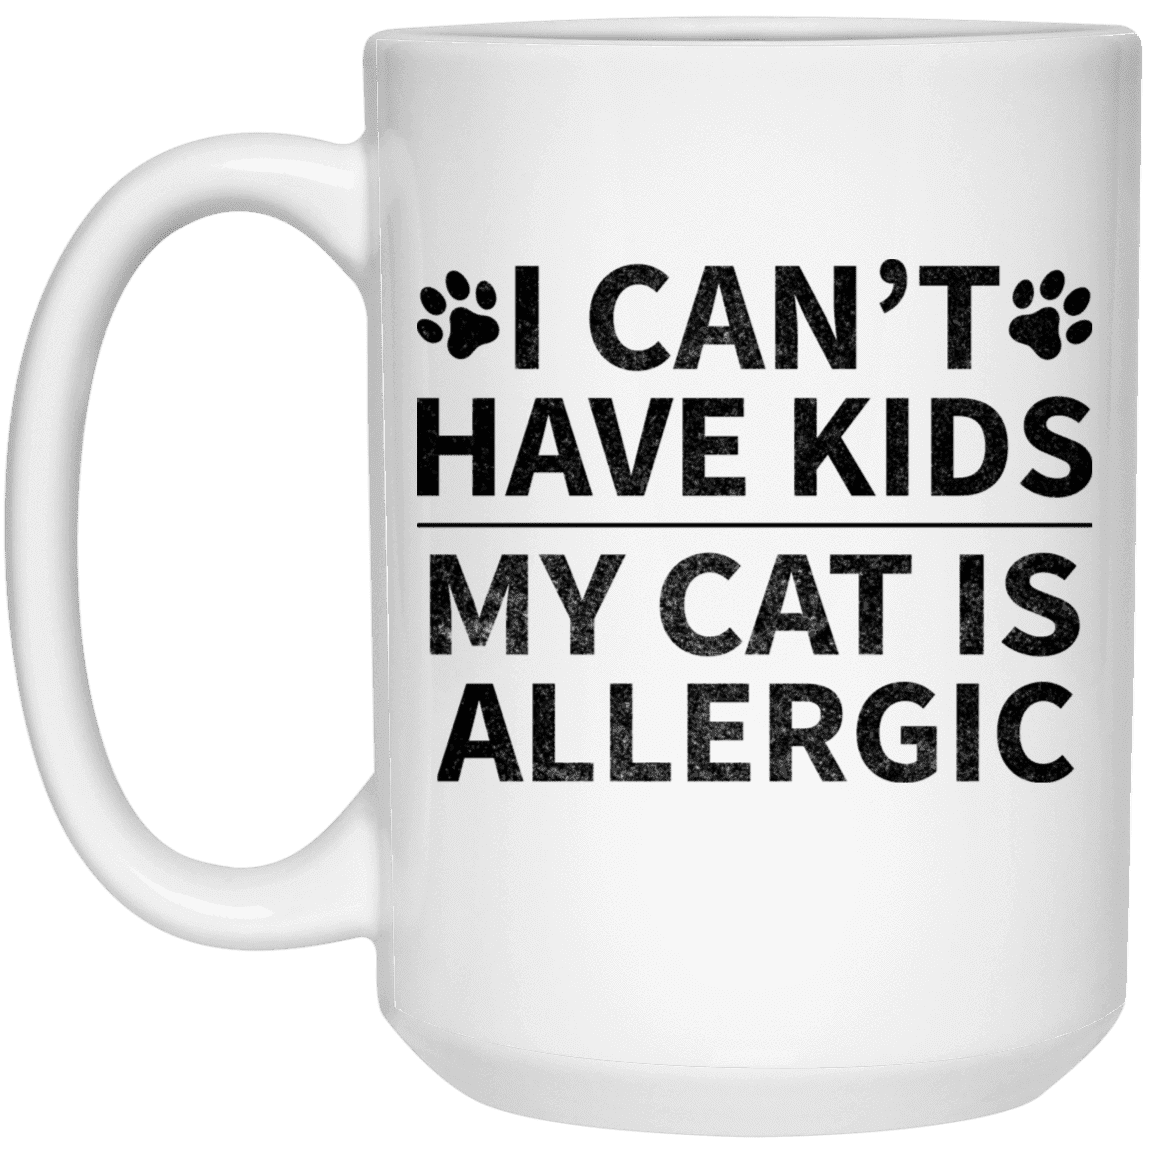 My Cat Is Allergic - Mugs.